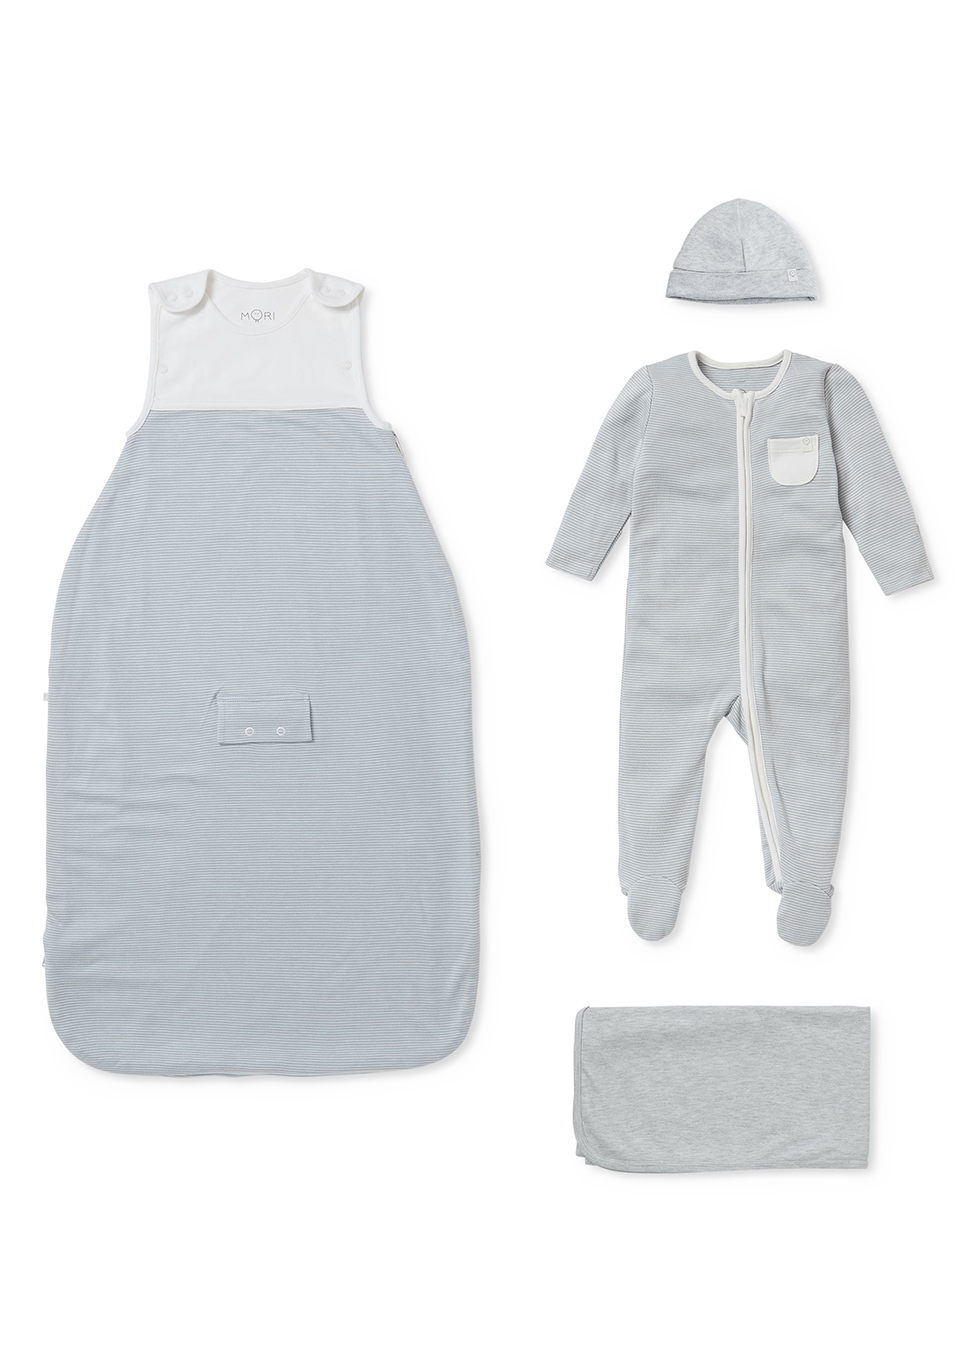 Mori Babies' Summer Clever Striped Jersey Sleep Set (6 Months)